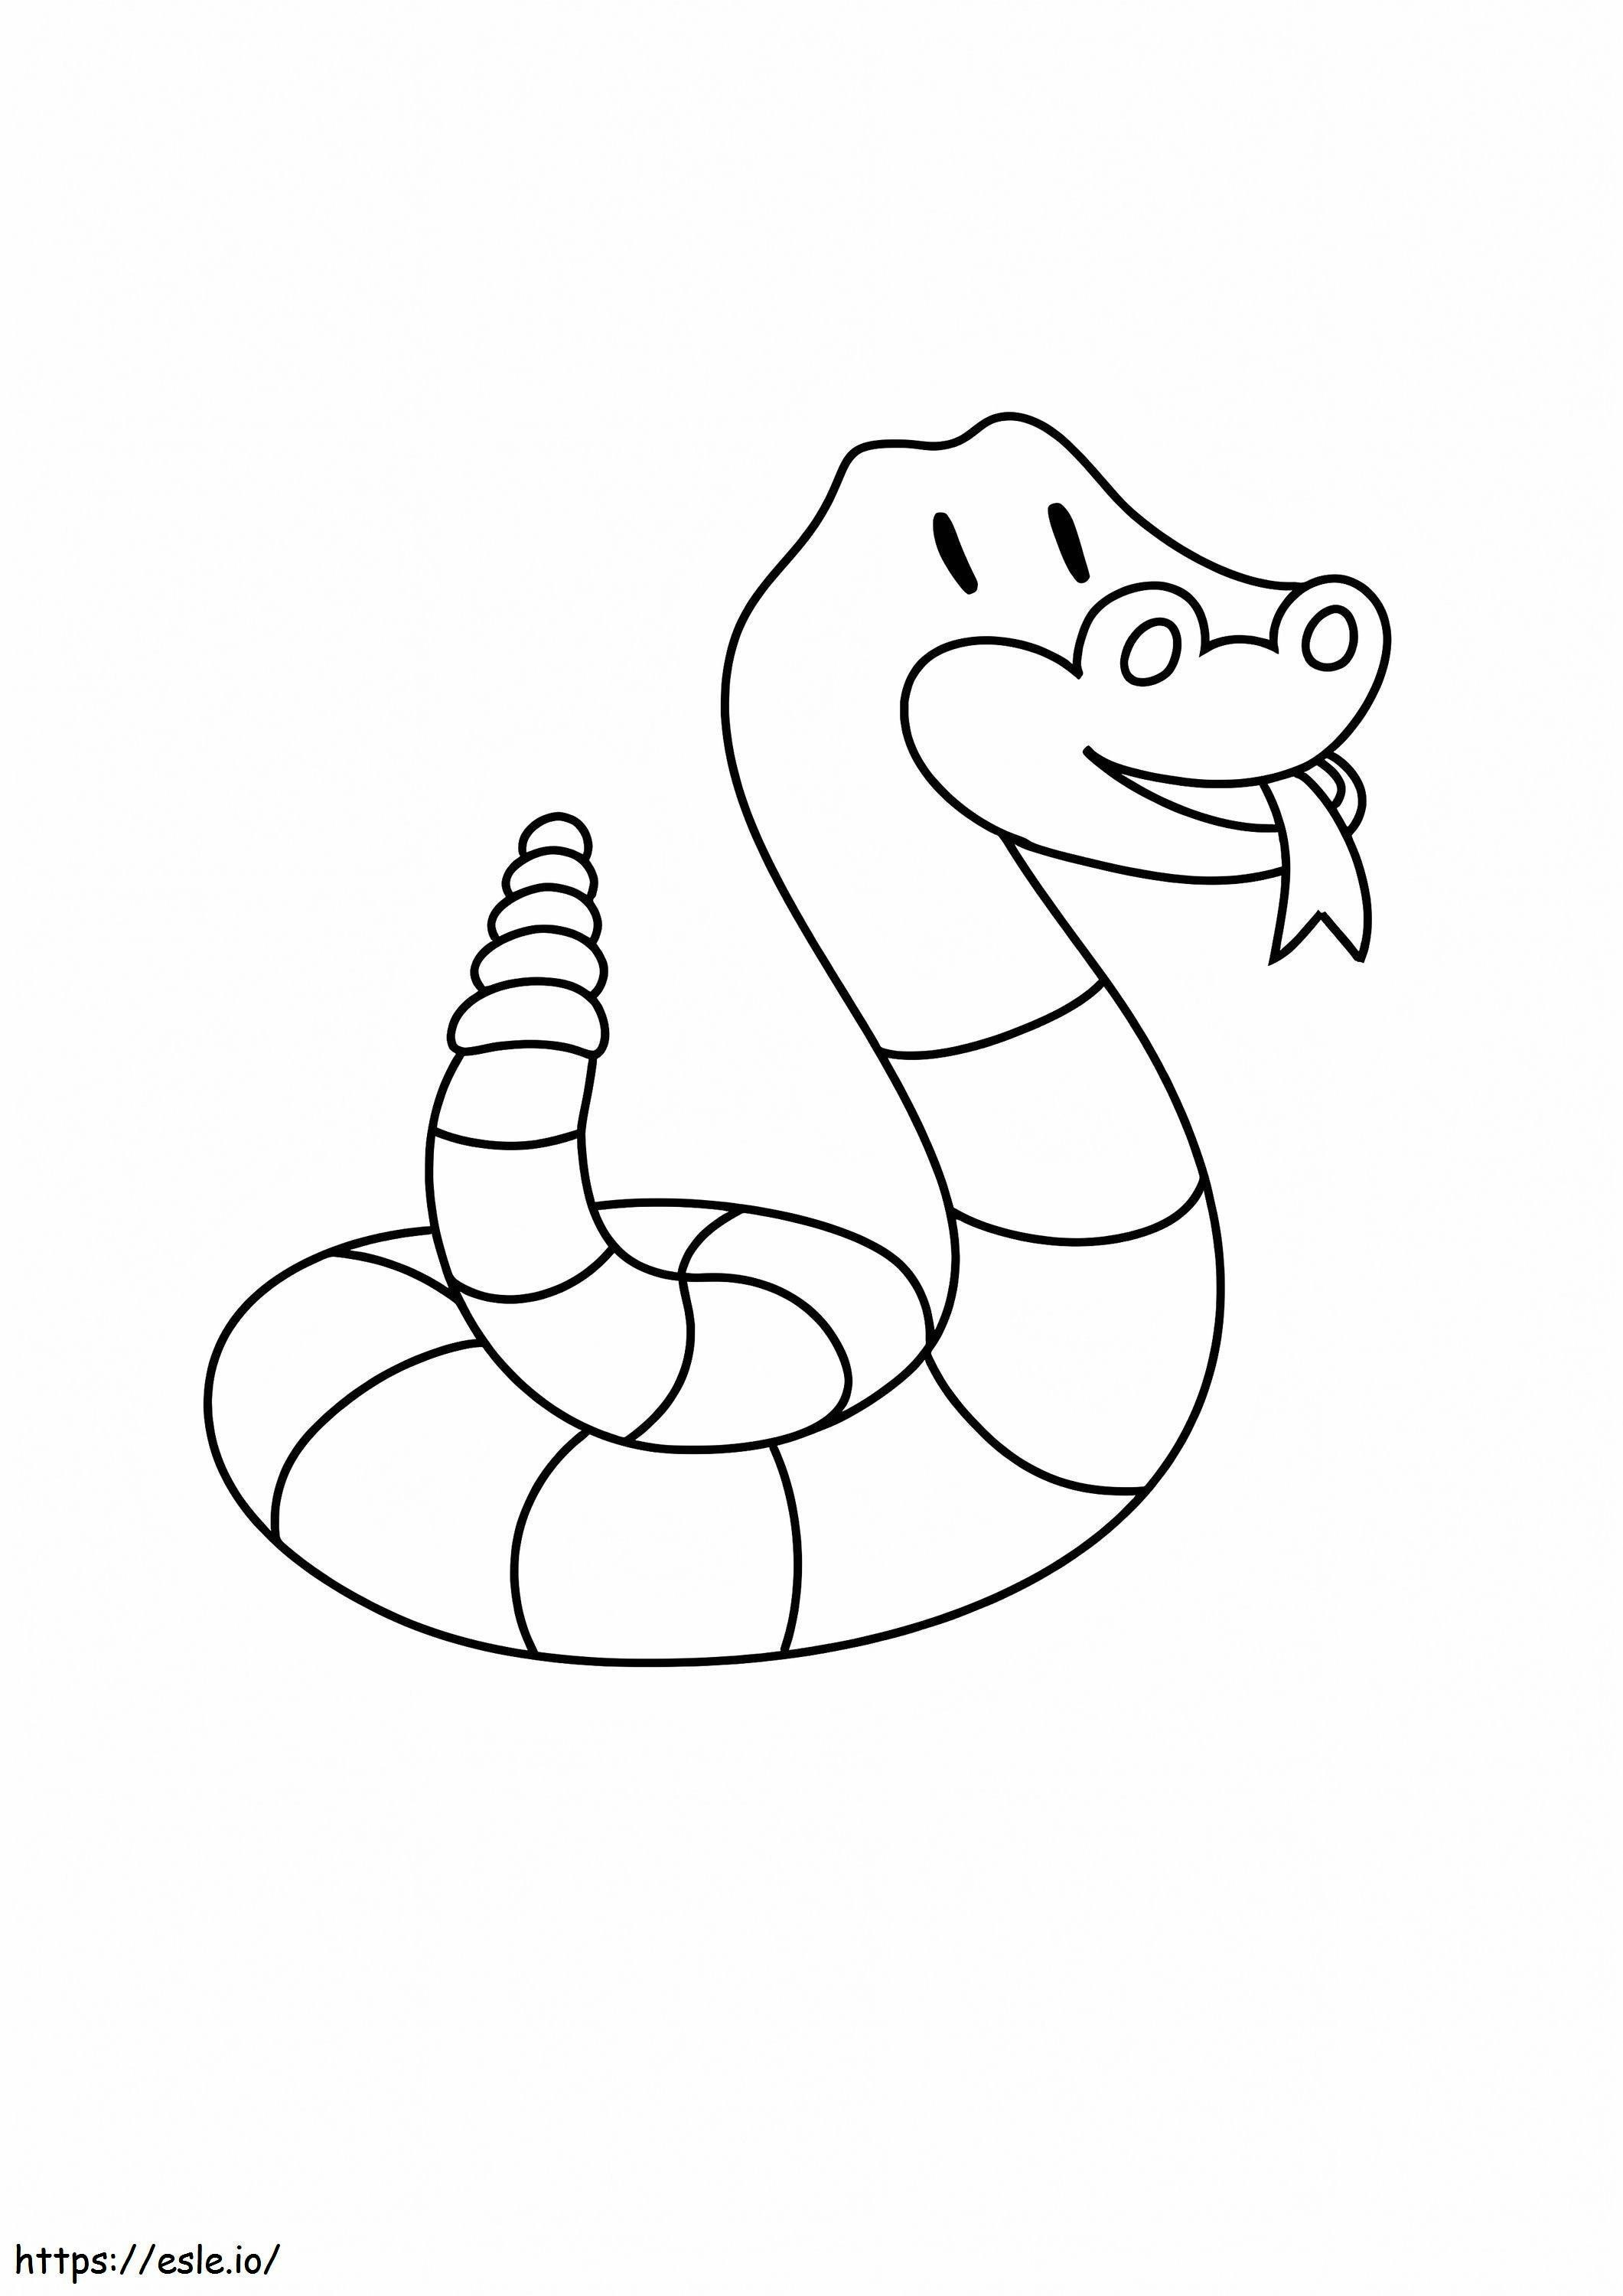 Serpente a sonagli divertente da colorare